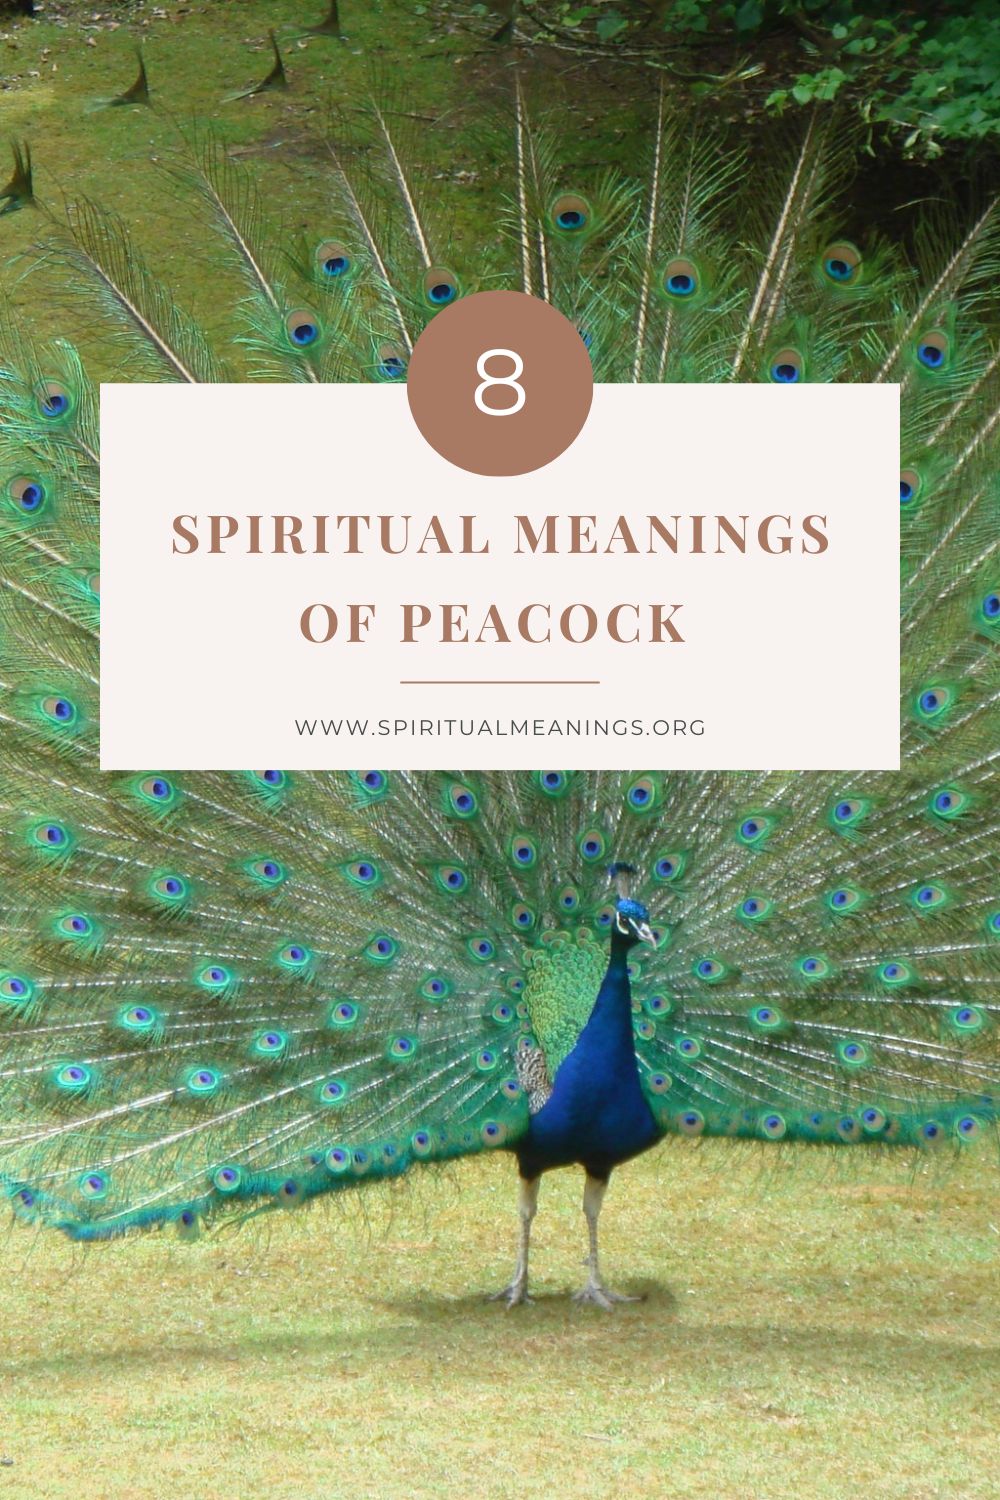 Peacocks as Spiritual Messengers